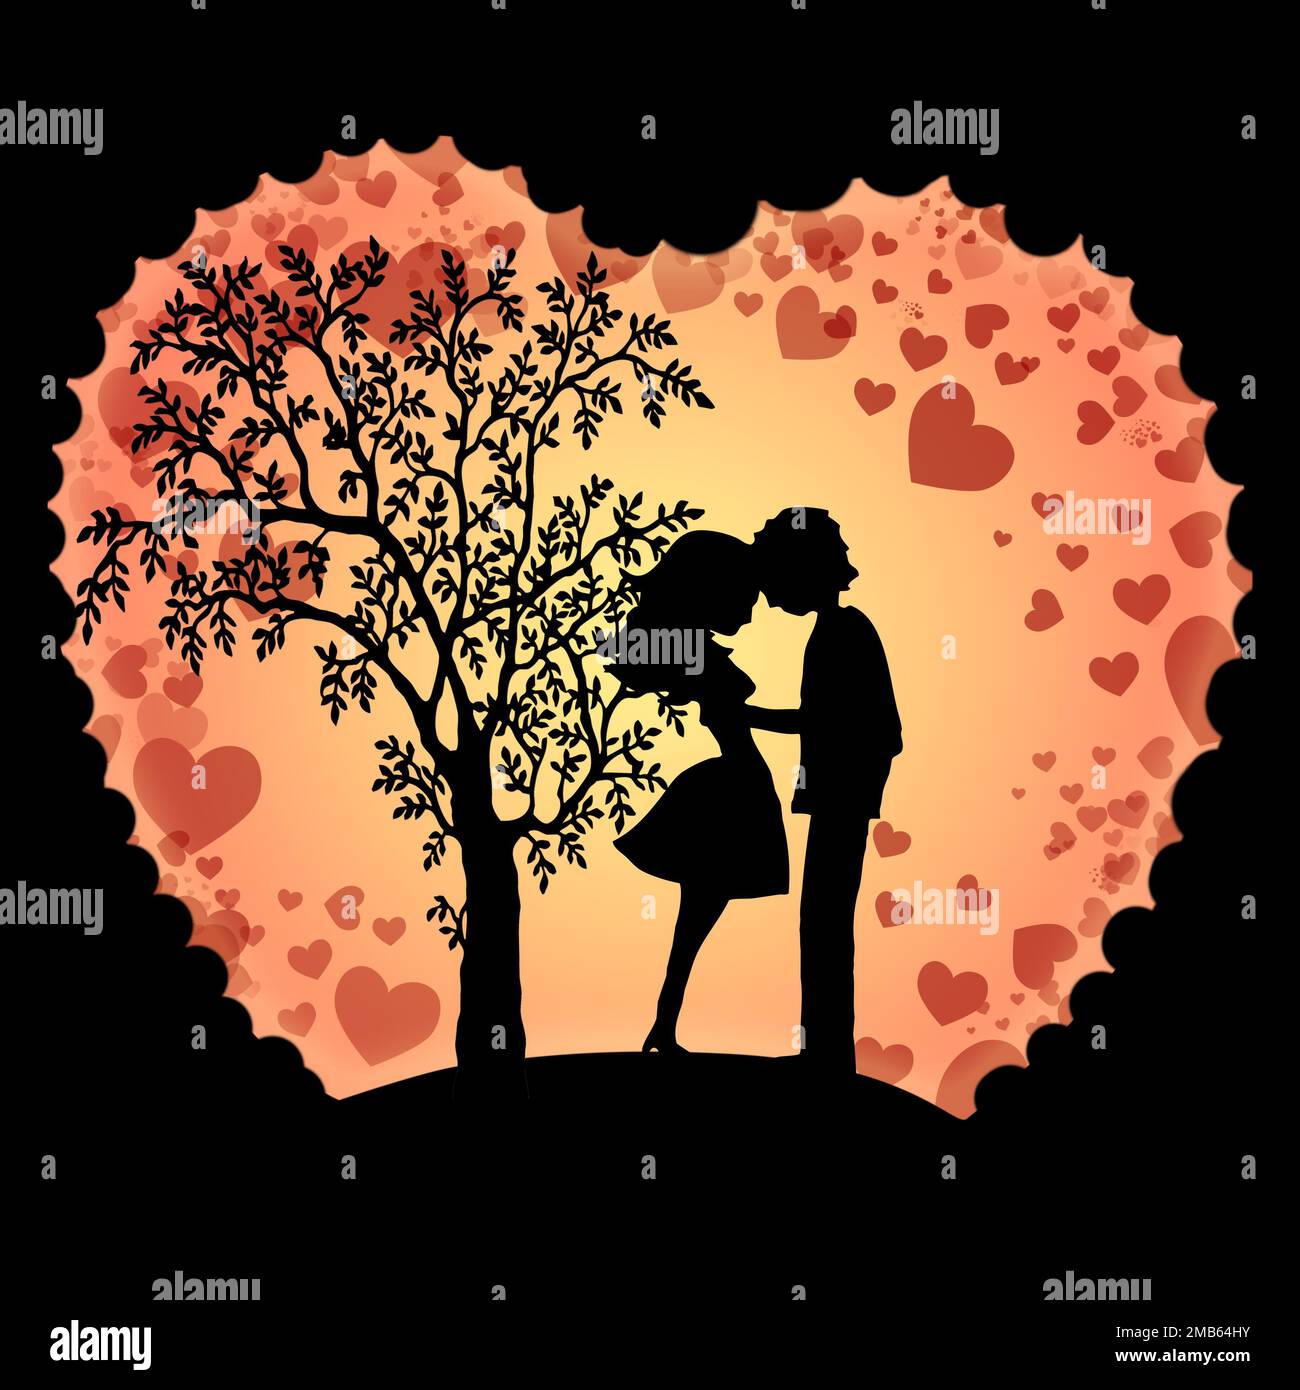 Illustrazione del biglietto d'auguri per la celebrazione di San Valentino con le silhouette di giovane coppia amorevole Foto Stock